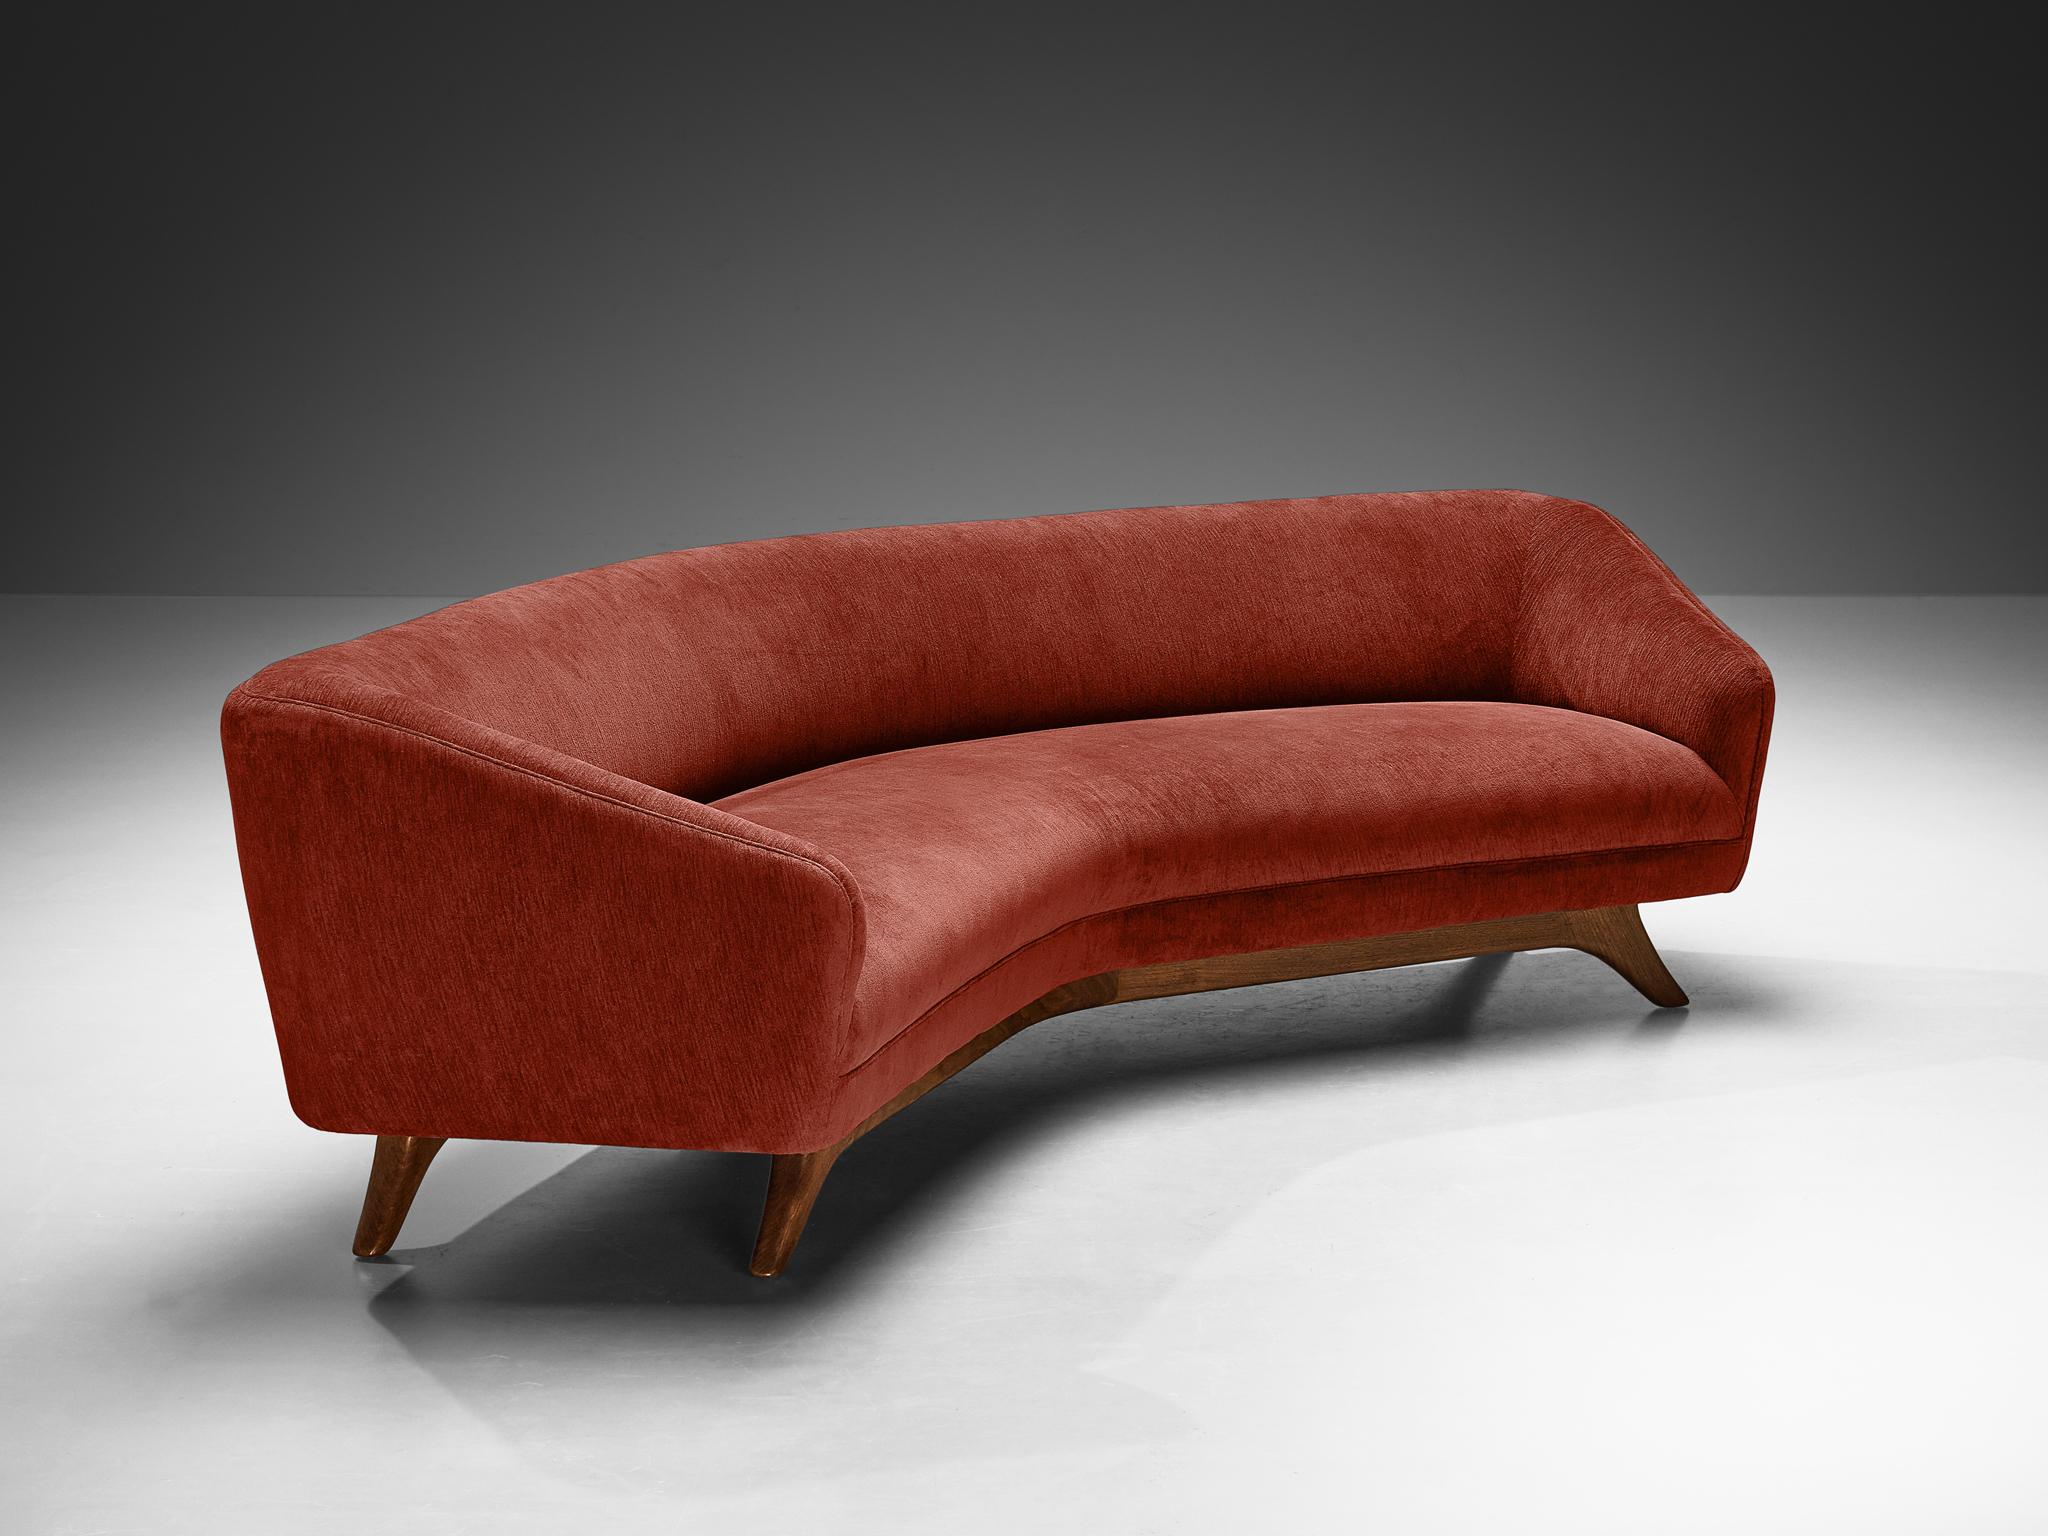 Vladimir Kagan für Vladimir Kagan Designs, Inc., Sofa 'Wide Angle', Modell 'W 506', Stoff, Nussbaum, Vereinigte Staaten, um 1970

Dieses seltene 